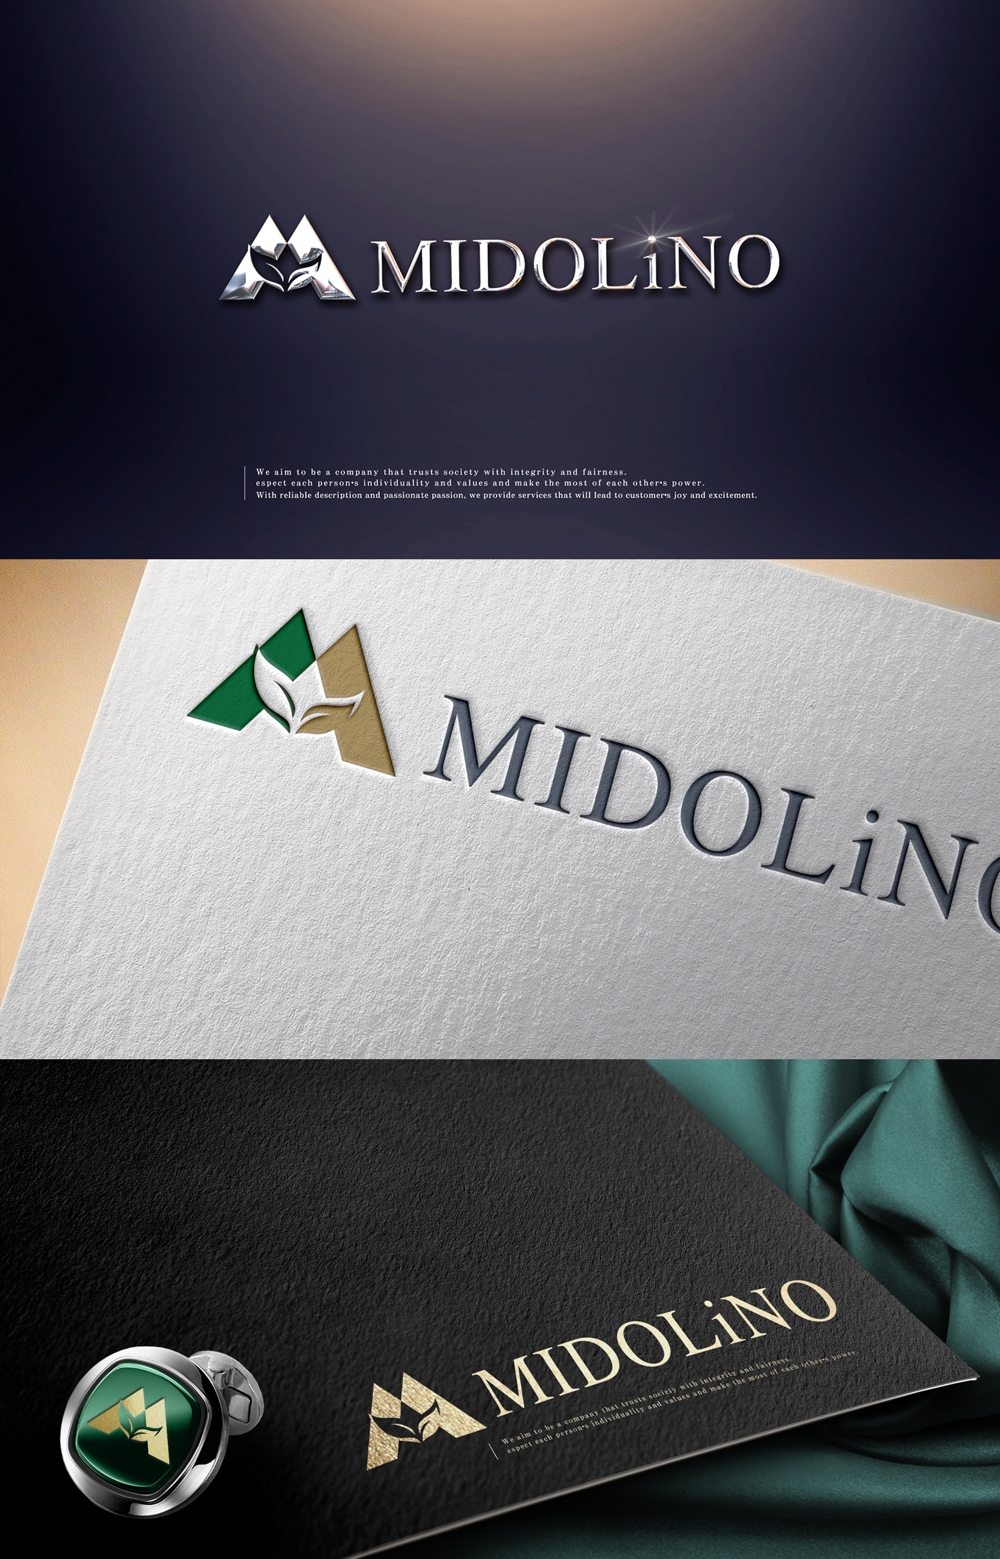 新規に立ち上げる外構工事会社「MIDOLiNO」のロゴマーク作成依頼